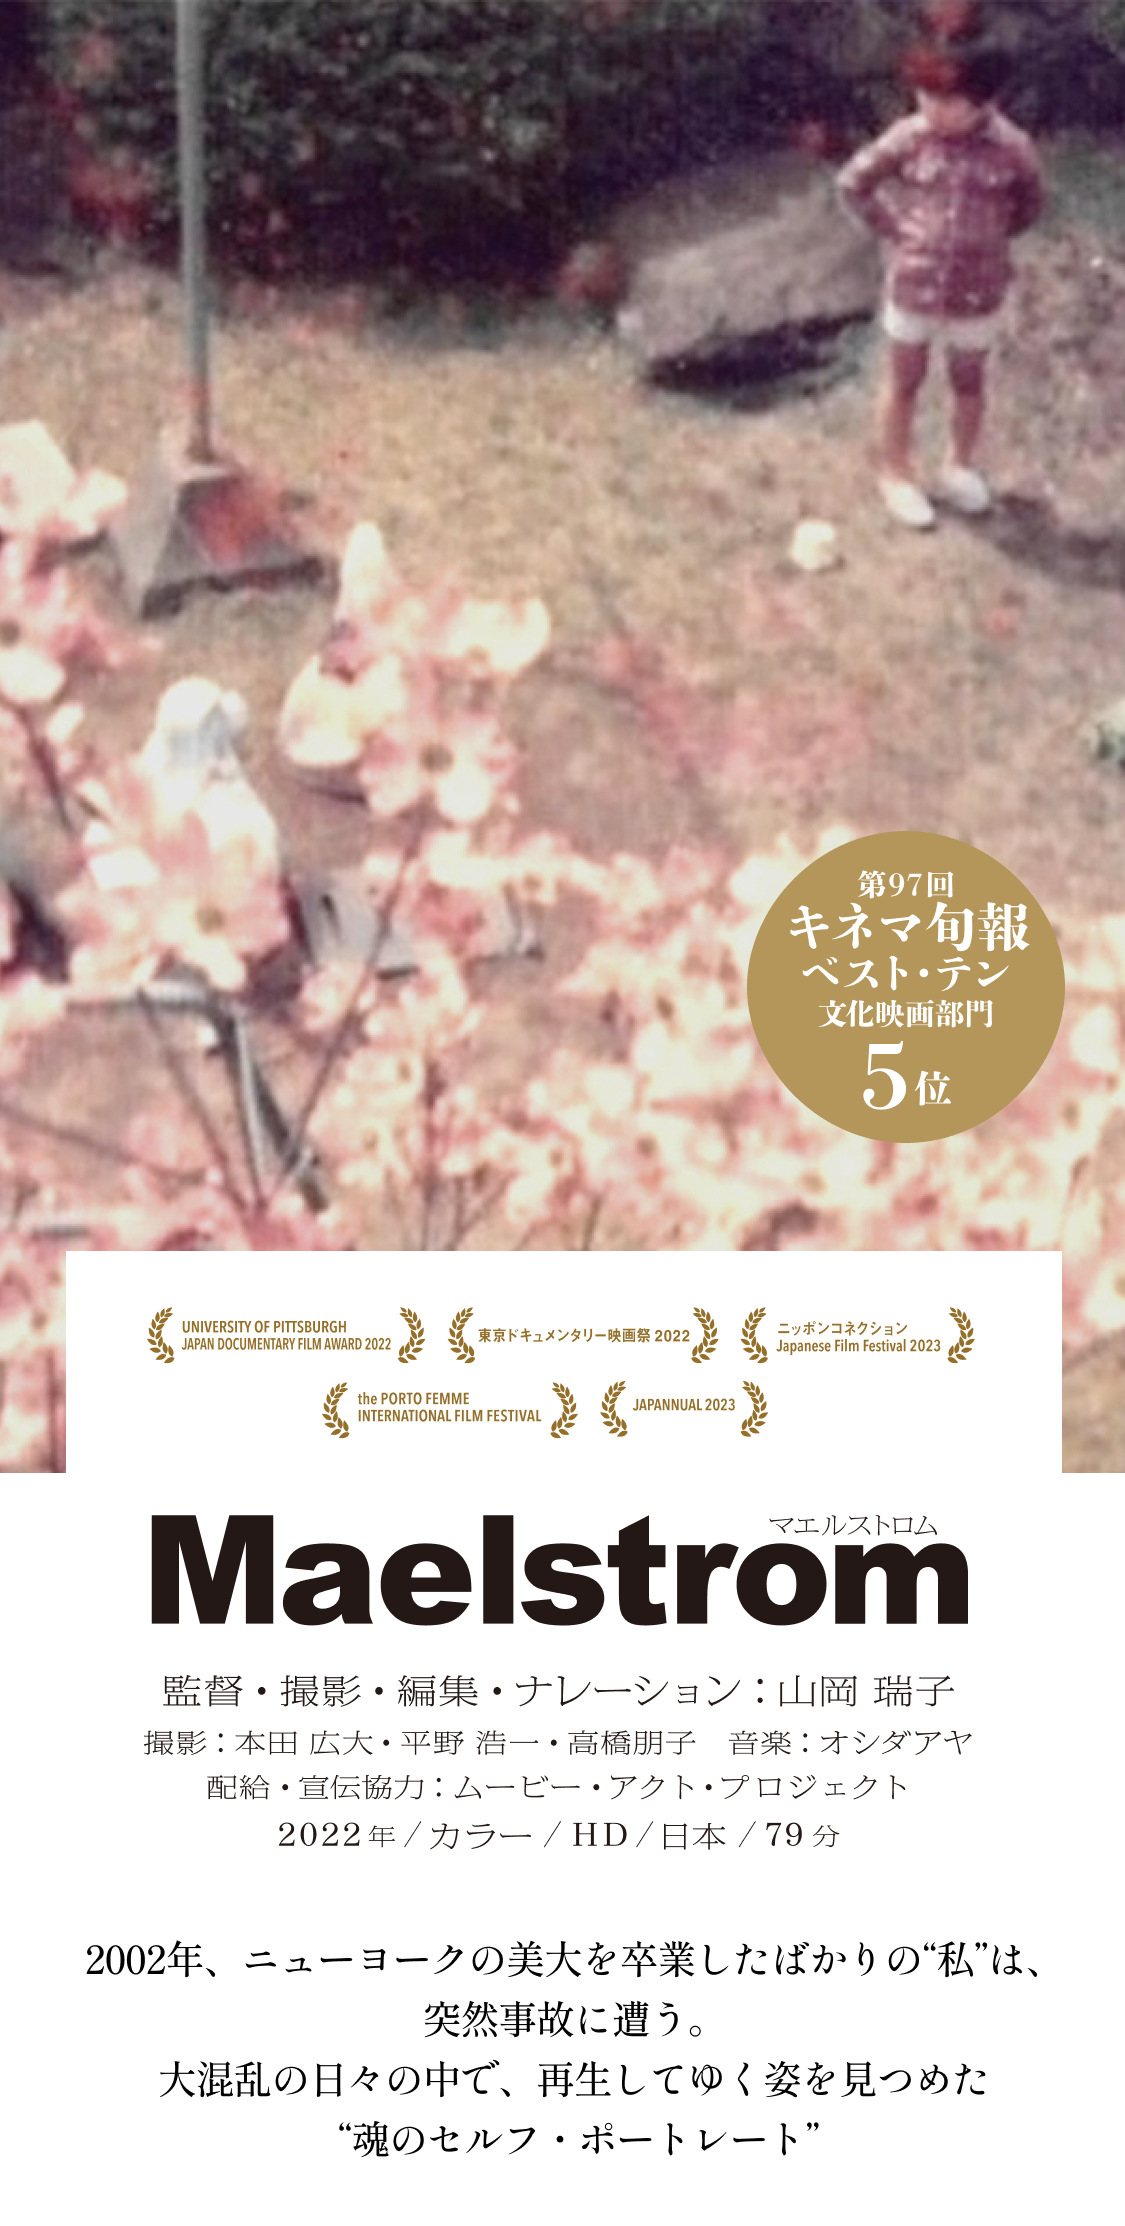 映画『Maelstrom マエルストロム』公式サイト